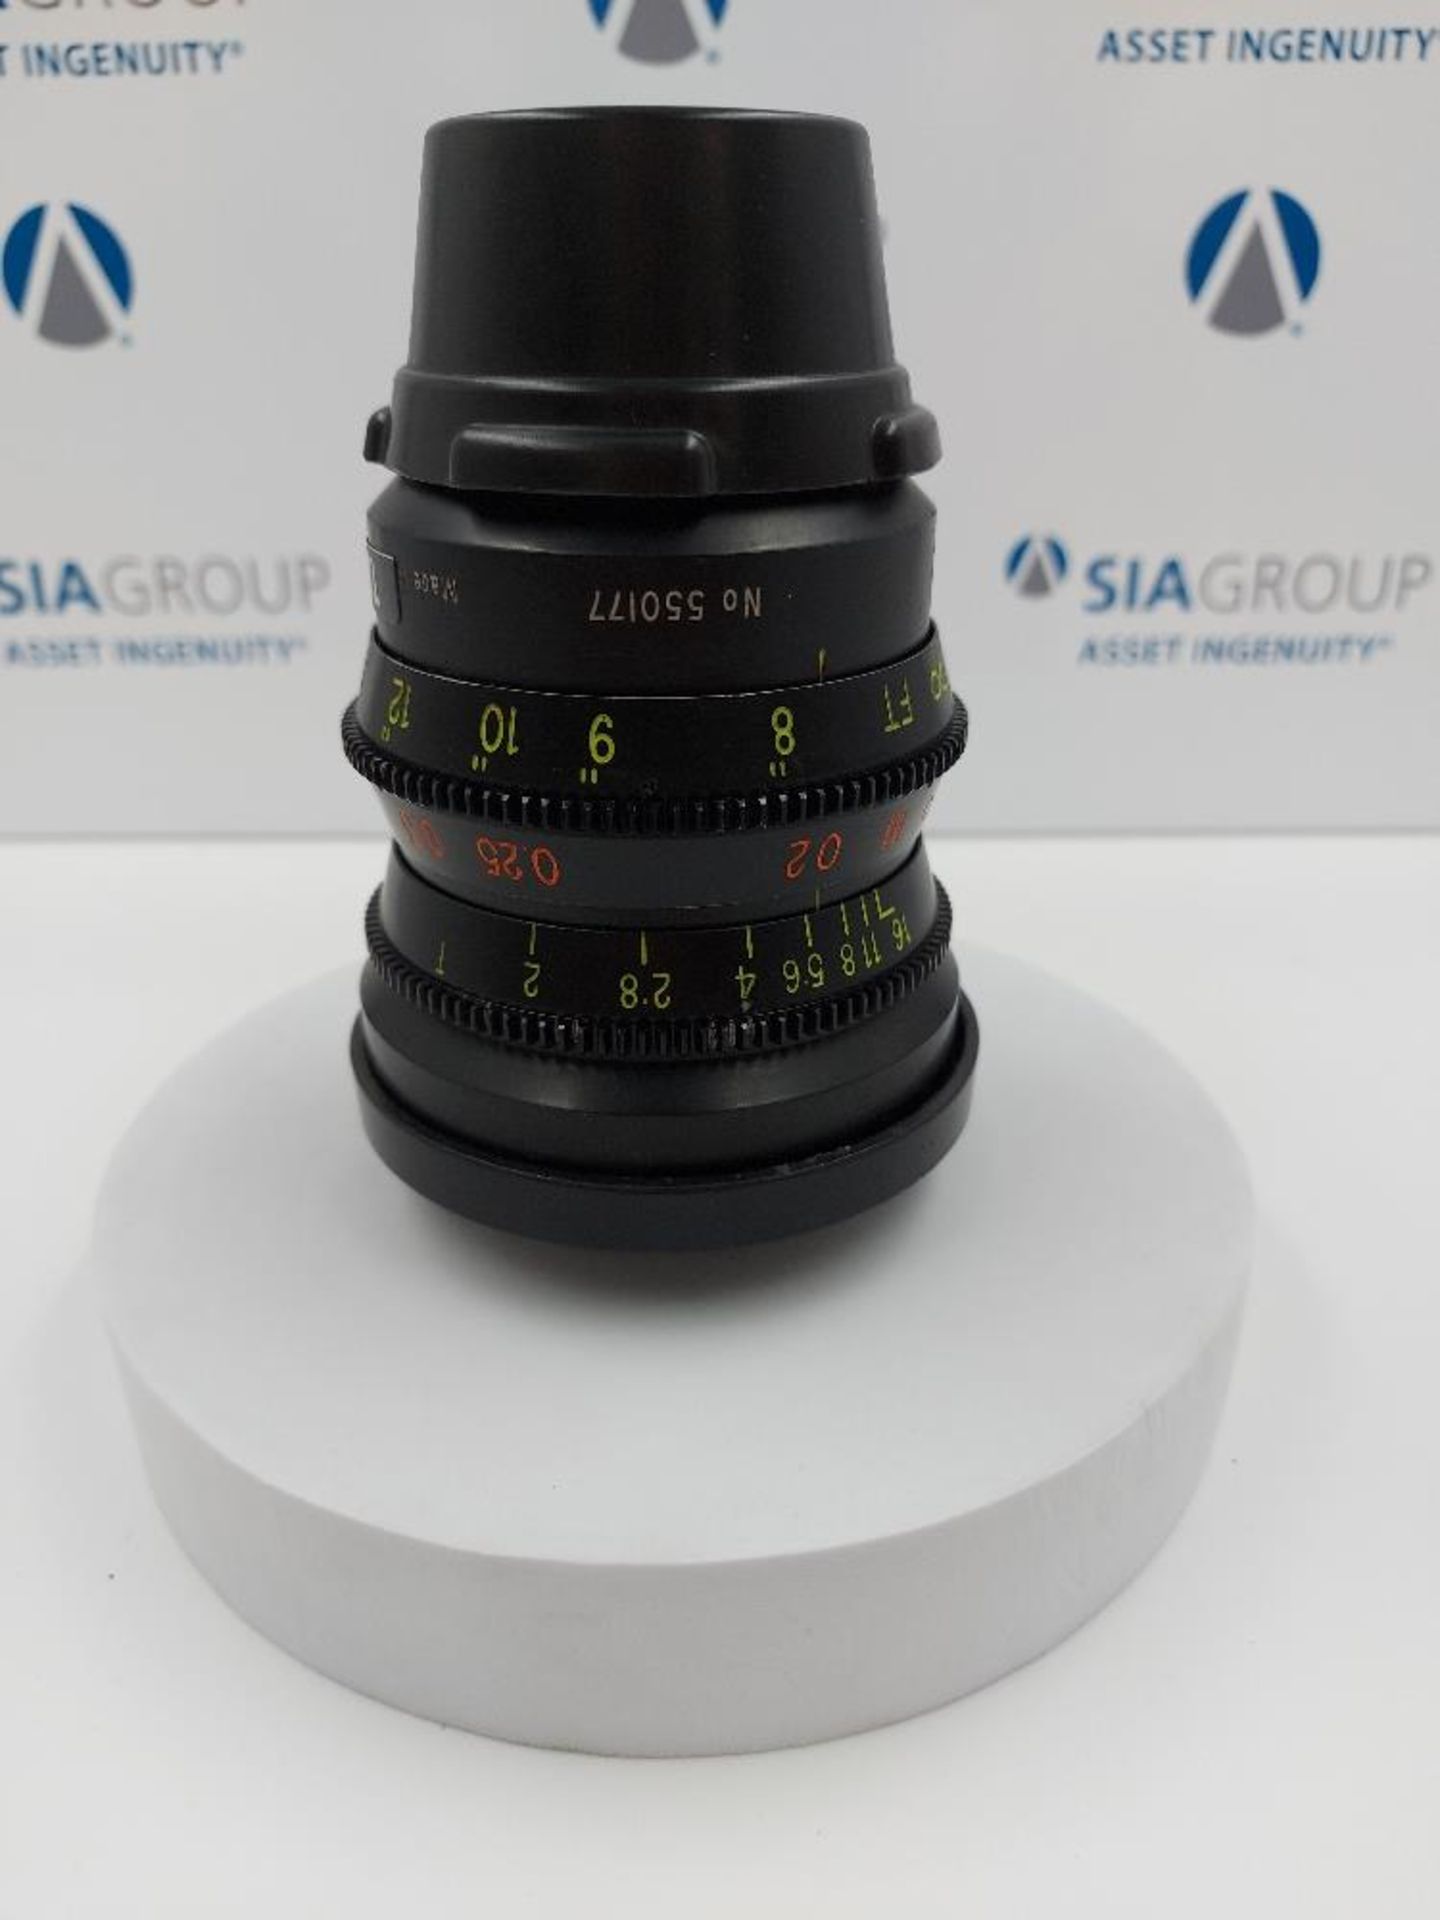 Optex Super 16 5.5mm T2 PL Mount Cinema Lens - Image 2 of 8